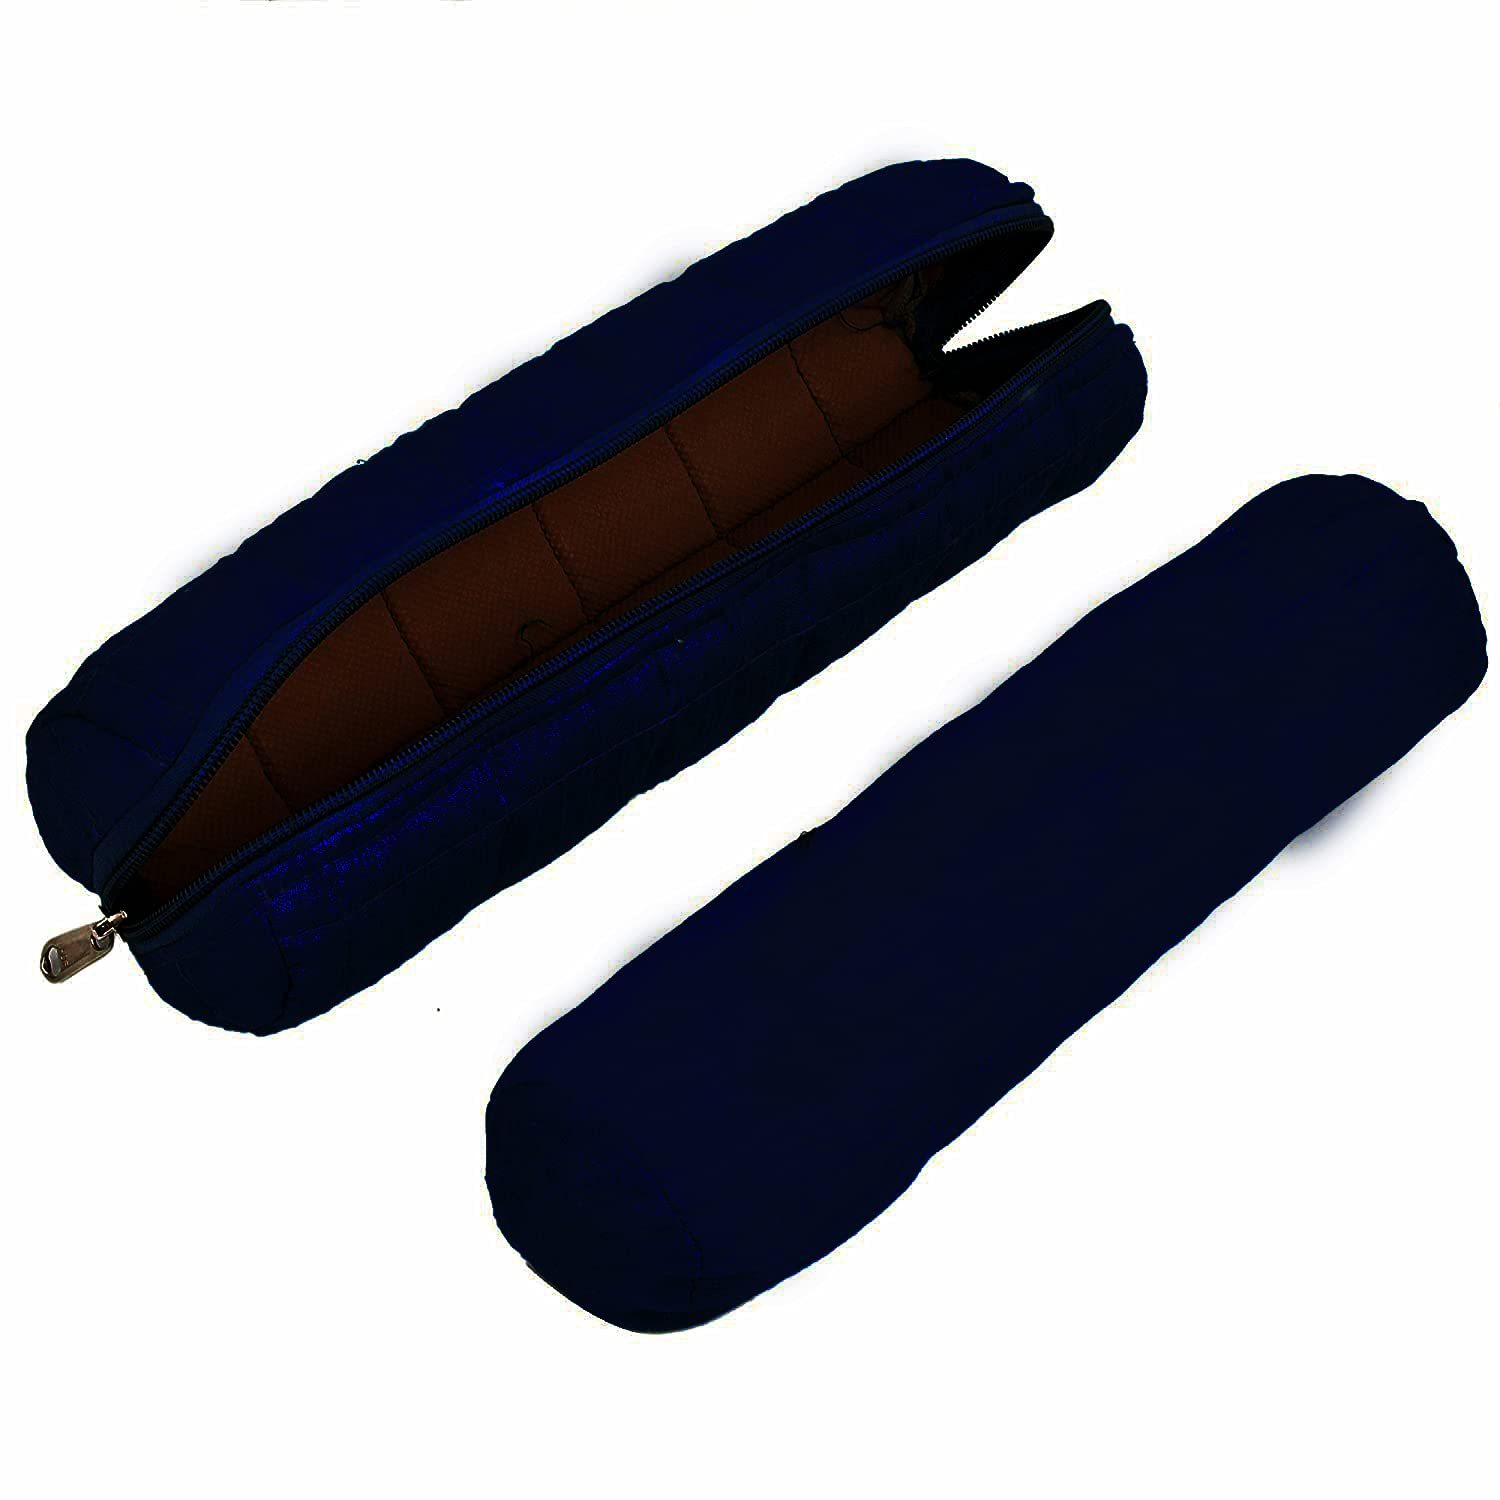 Kuber Industries One Roll Bangle Organizer|Watch Case|Bracelet Organizer Pouch (Navy Blue)